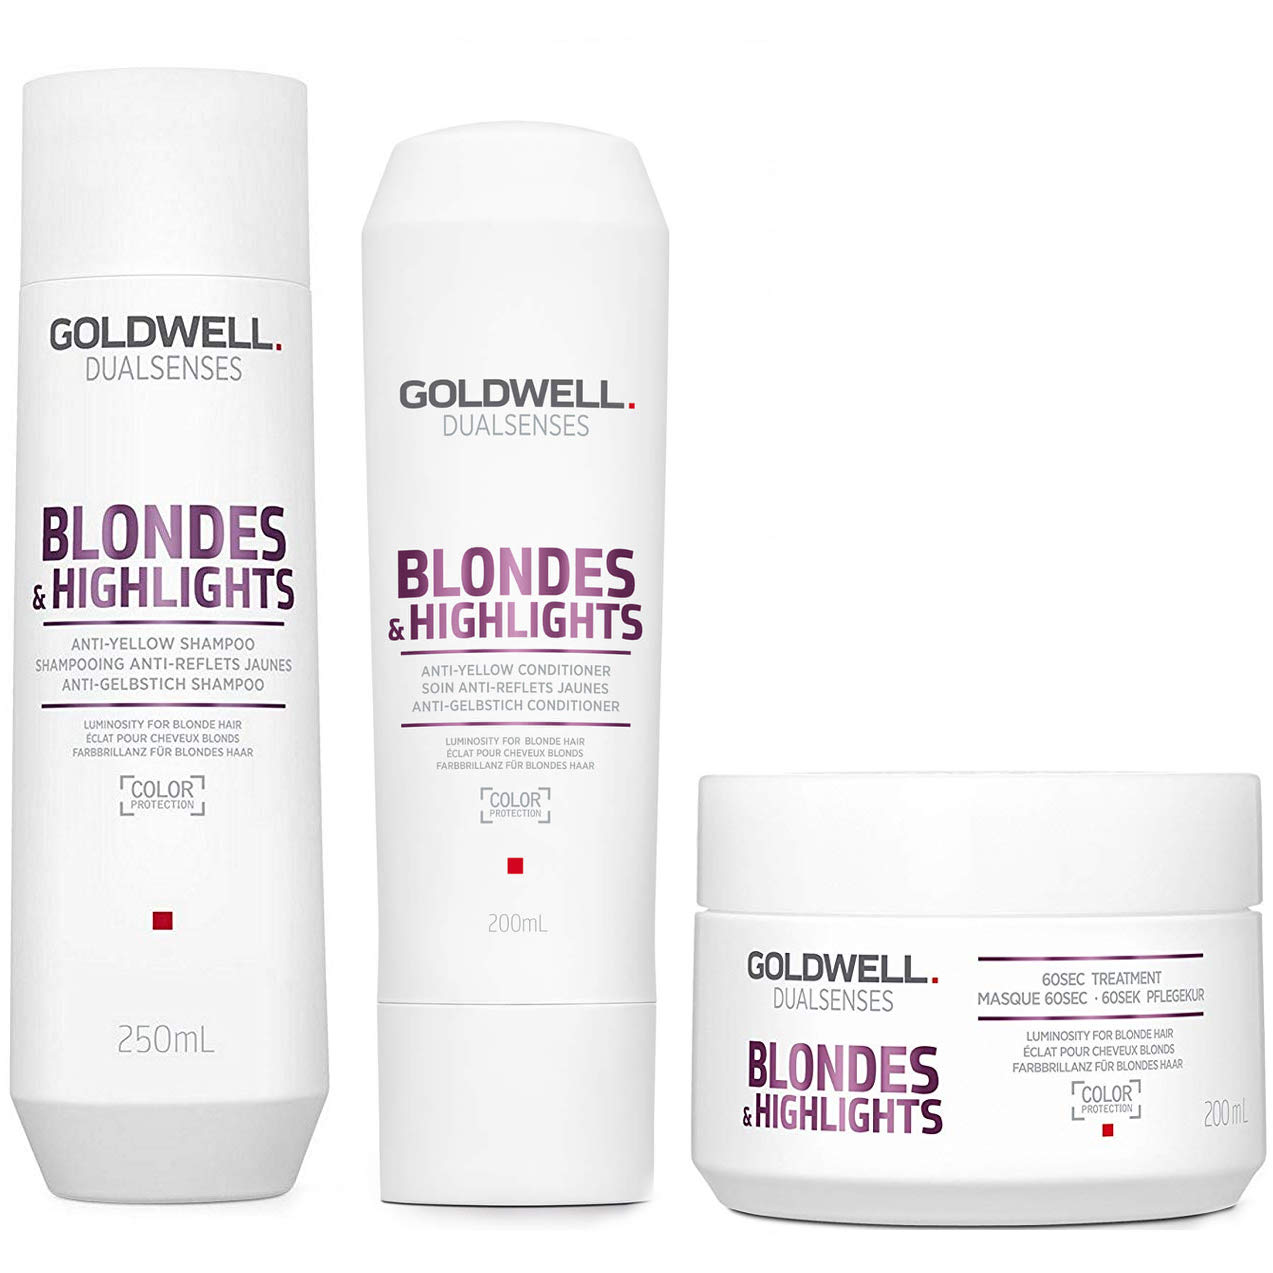 Blondes and Highlights | Zestaw do włosów blond: szampon 250ml + odżywka 200ml + maska 200ml